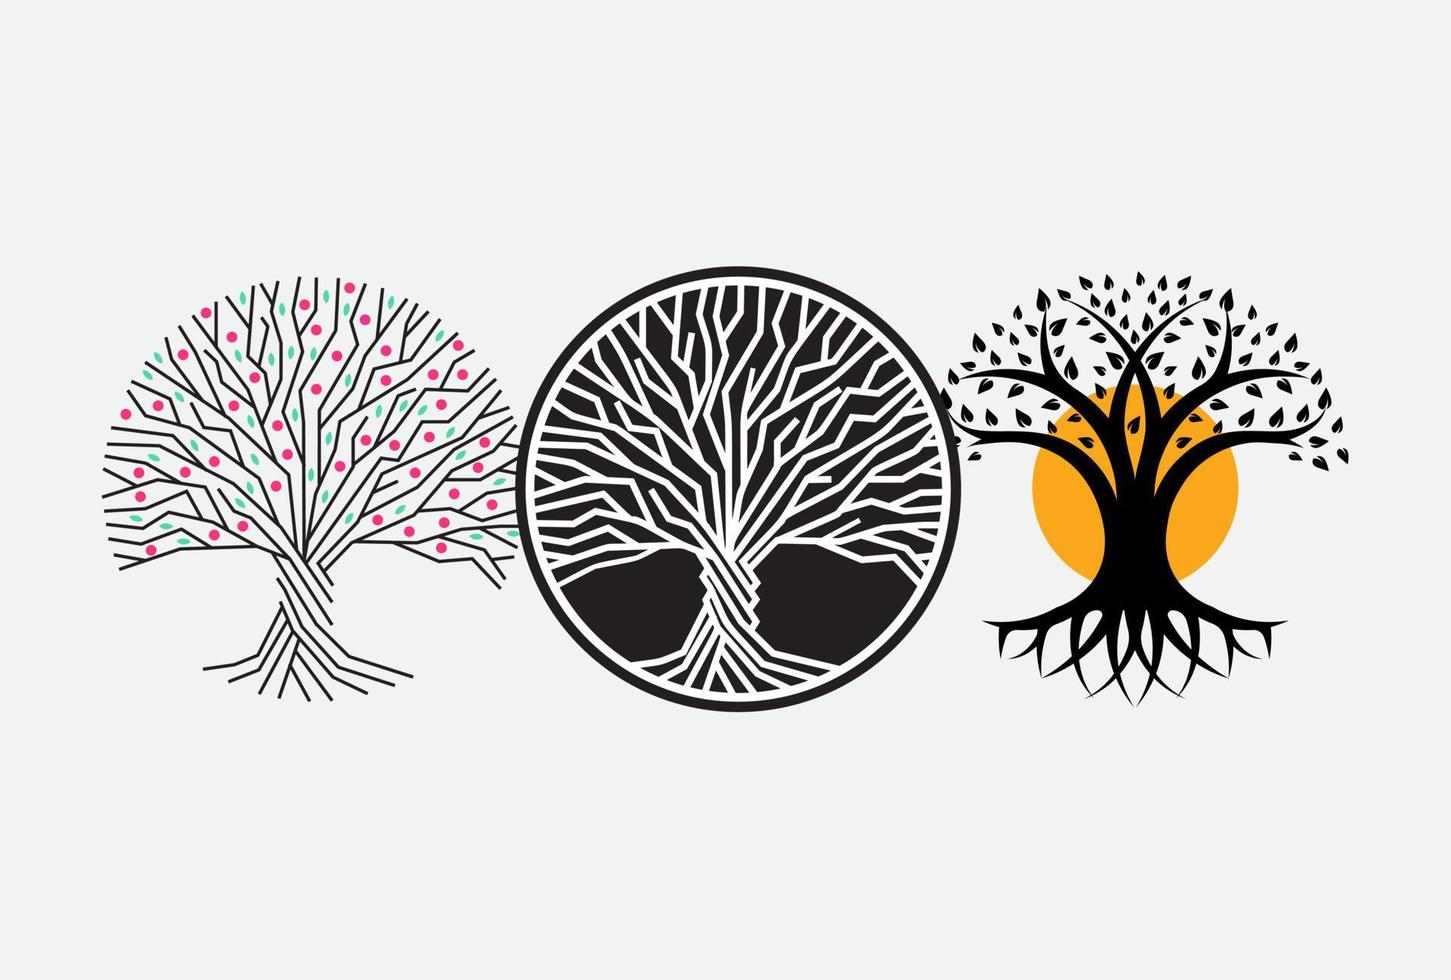 tronco, raiz e ramos da árvore vector redondo conceito de logotipo. ícone isolado de floresta em fundo branco. símbolo de sabedoria para gráfico de educação ou negócios.